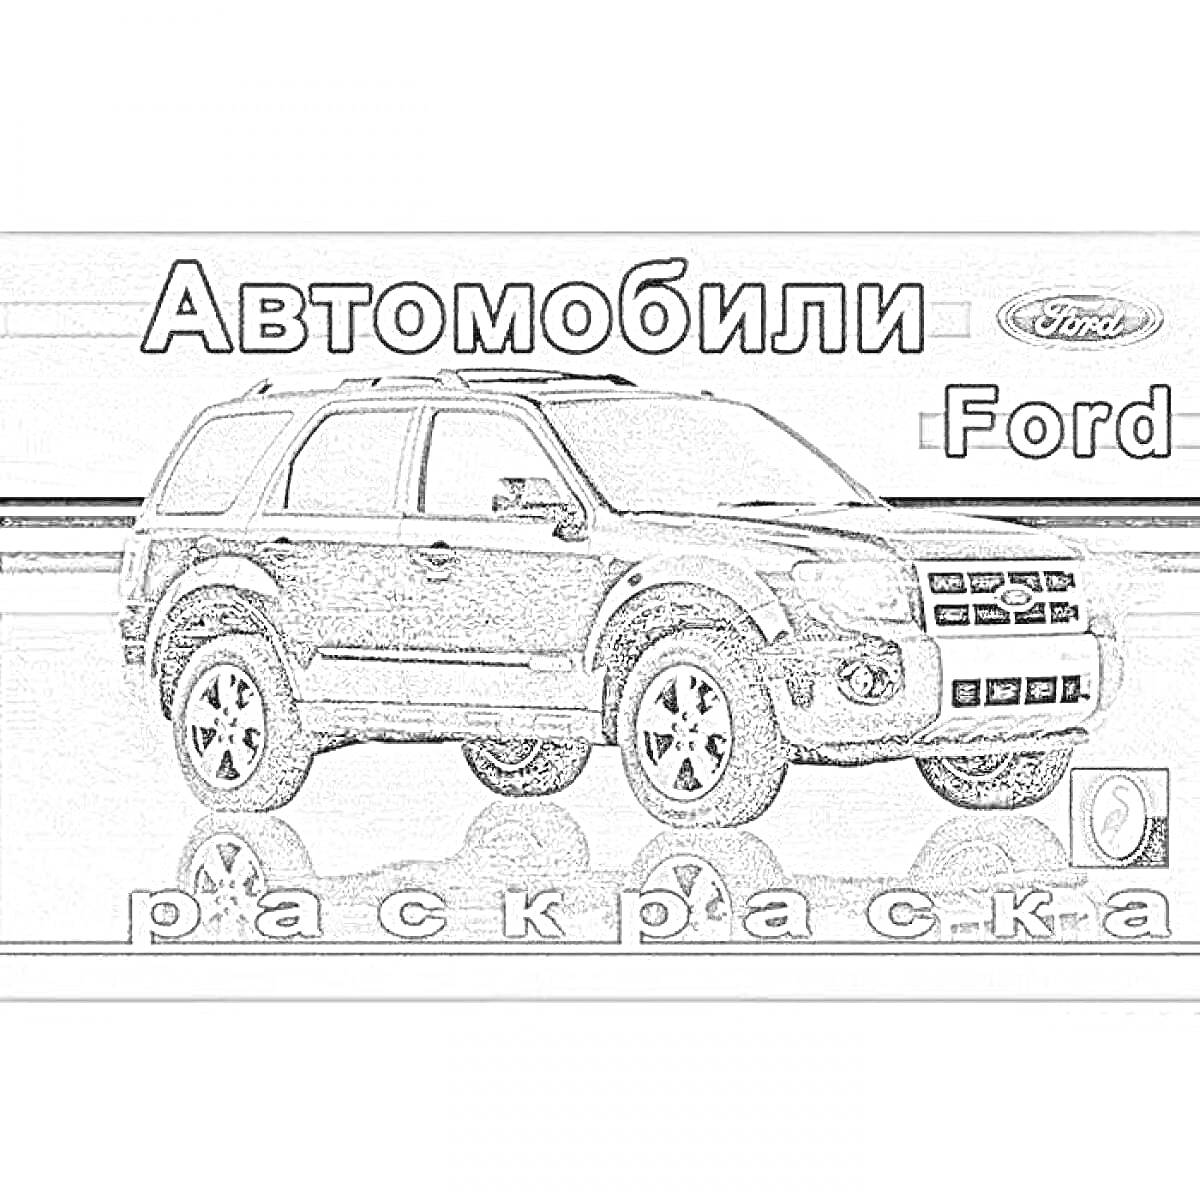 Раскраска Автомобили Ford, раскраска с изображением большой машины, логотип Ford в правом верхнем углу, надпись 